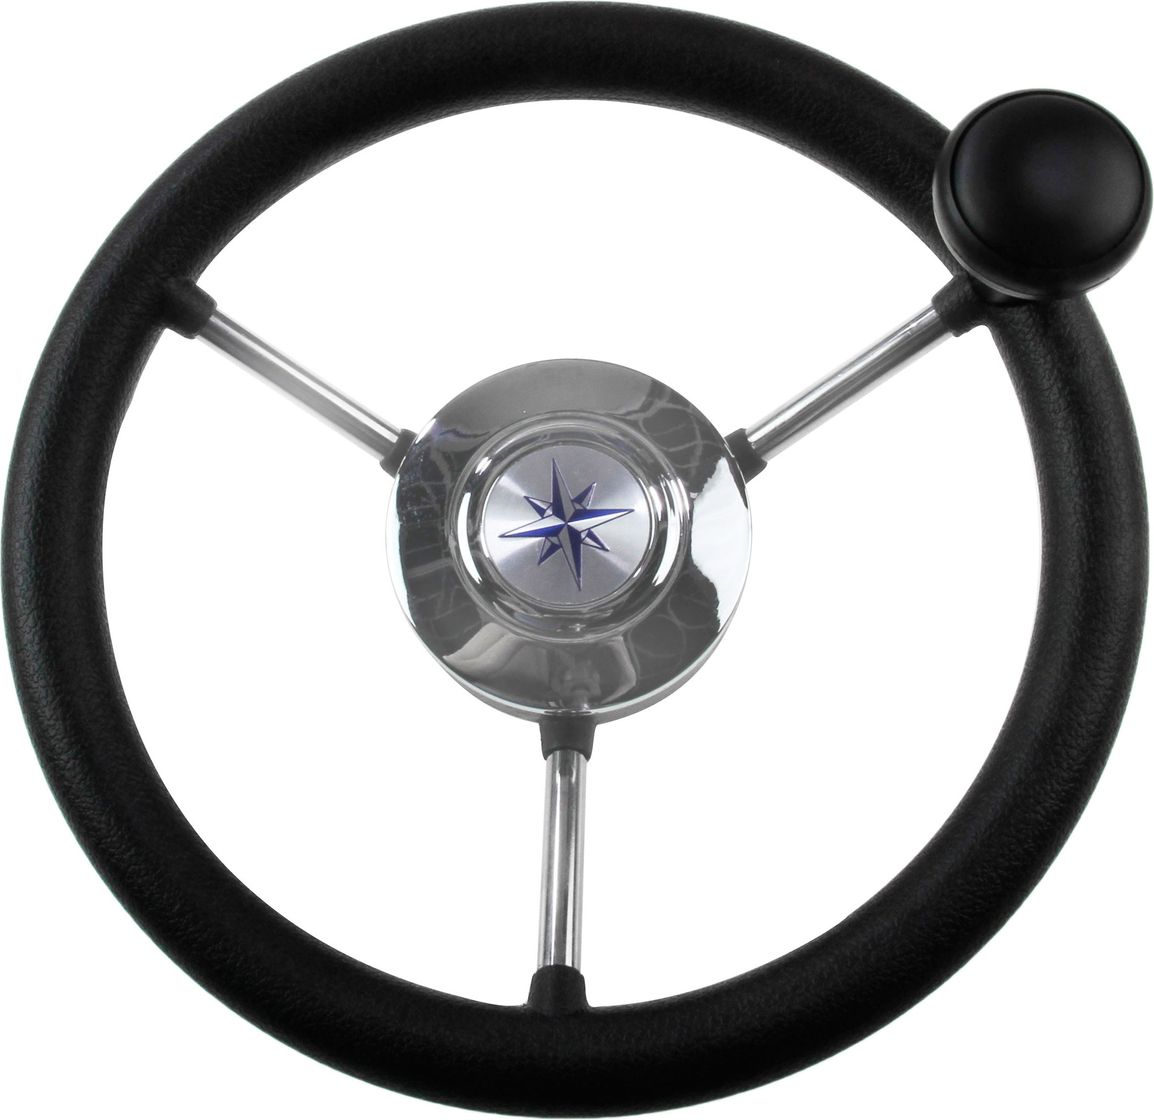 Рулевое колесо LIPARI обод черный, спицы серебряные д. 280 мм со спинером VN828050-01 рулевое колесо leader tanegum белый обод серебряные спицы д 330 мм vn7330 08